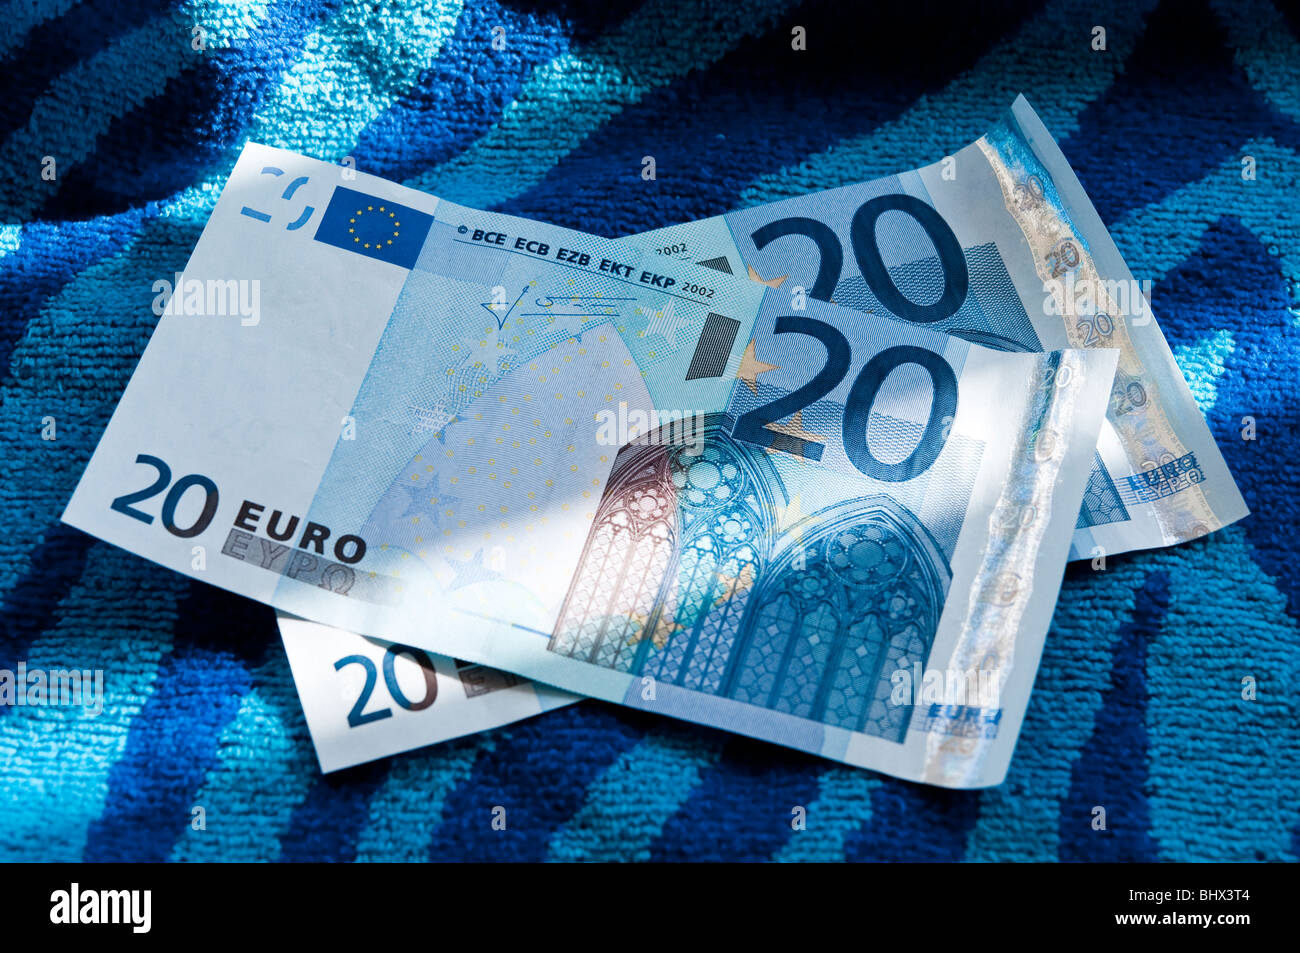 Euros on a colourful beach towel Stock Photo